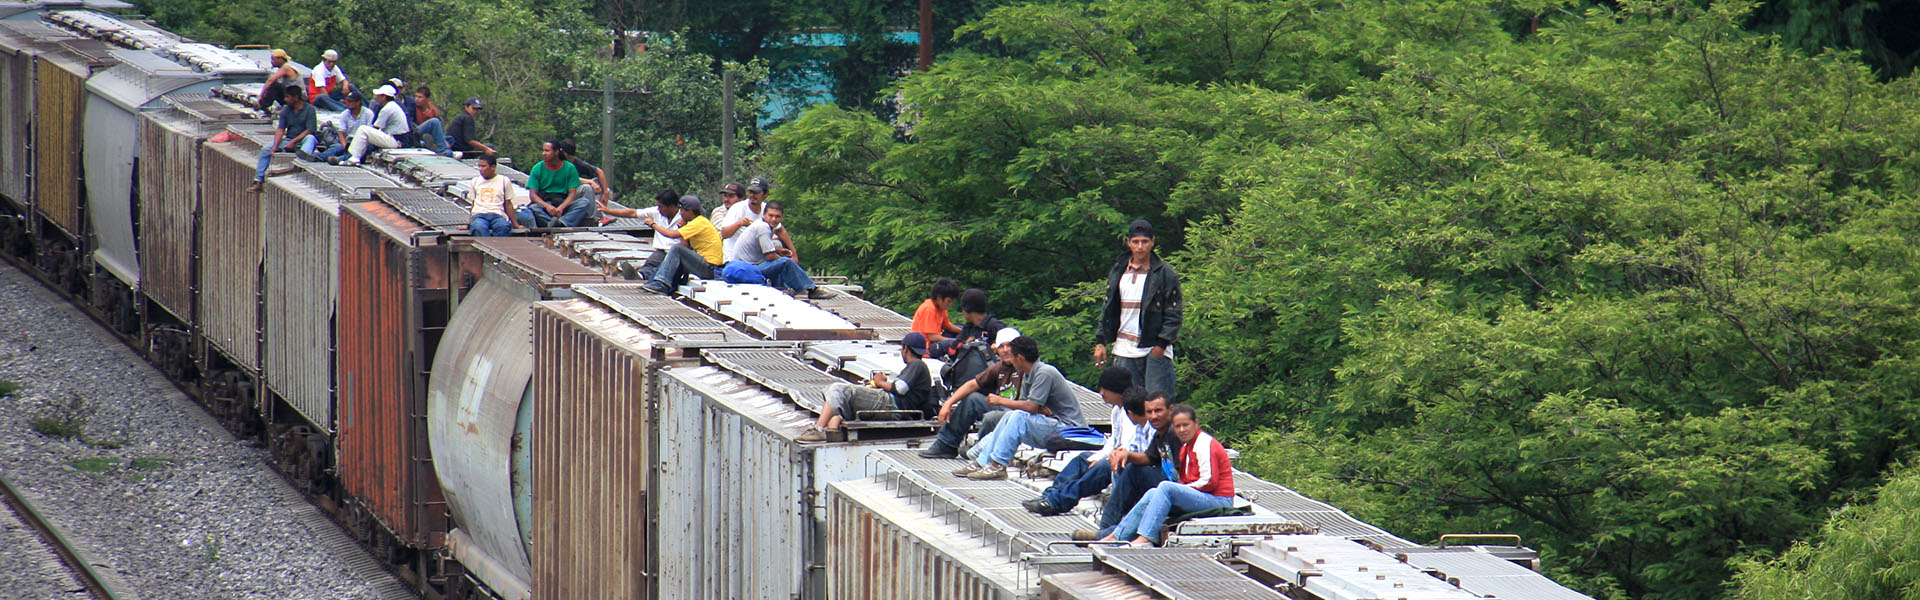 Cinquante ans d’engagement pour la justice sociale en Amérique latine